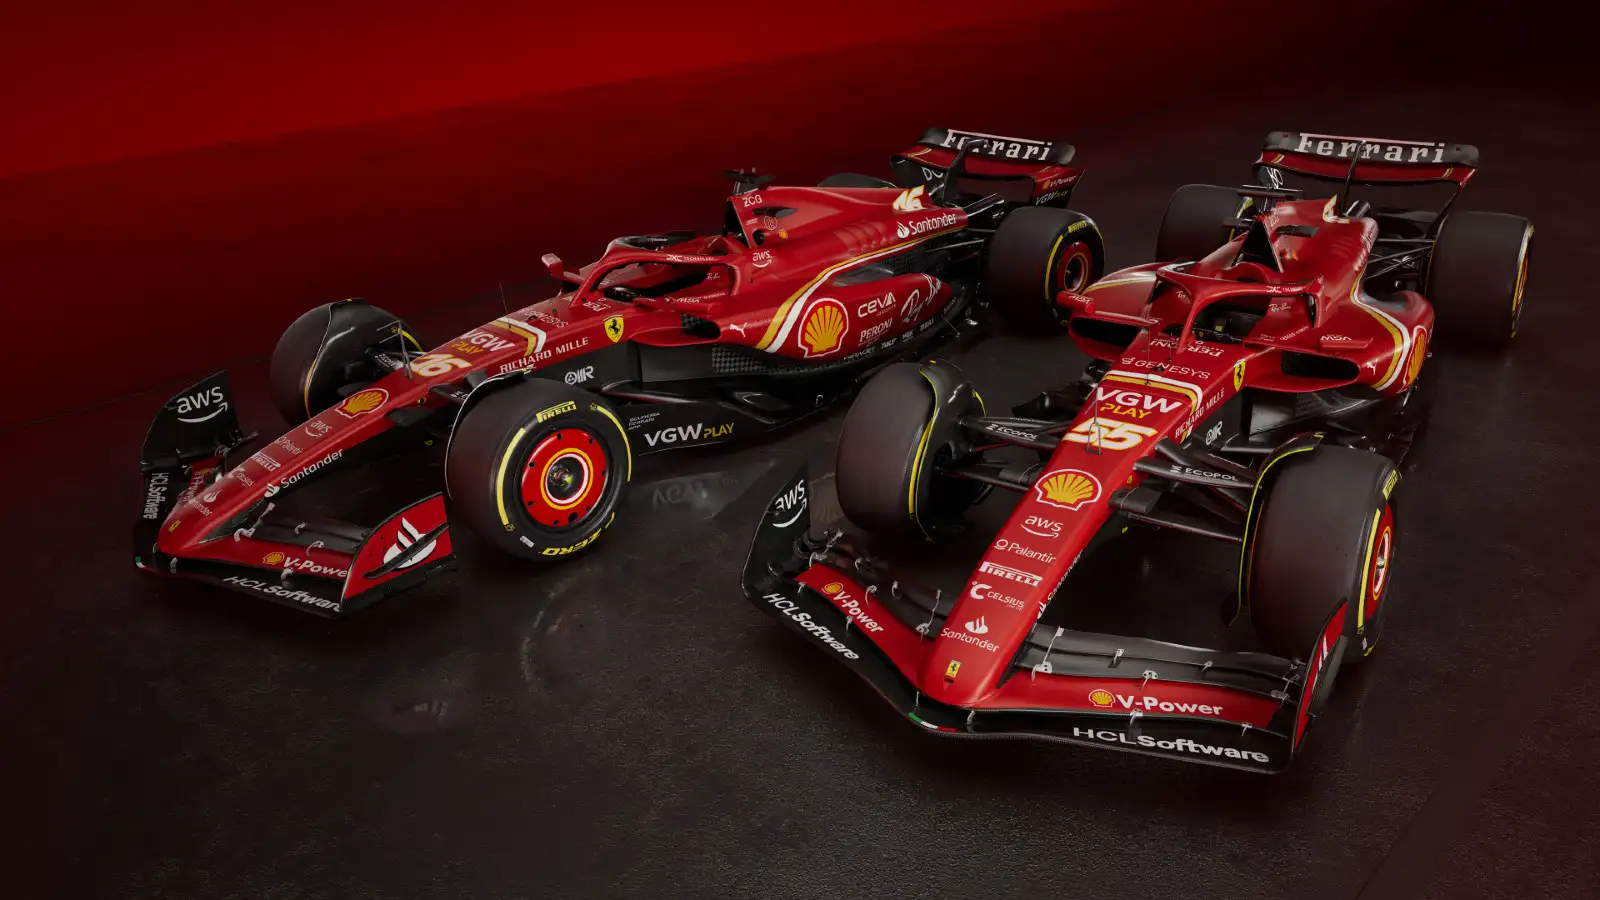 Sprawdź wszystkie zdjęcia samochodu Ferrari 2024 F1 po ekscytującej premierze: PlanetF1